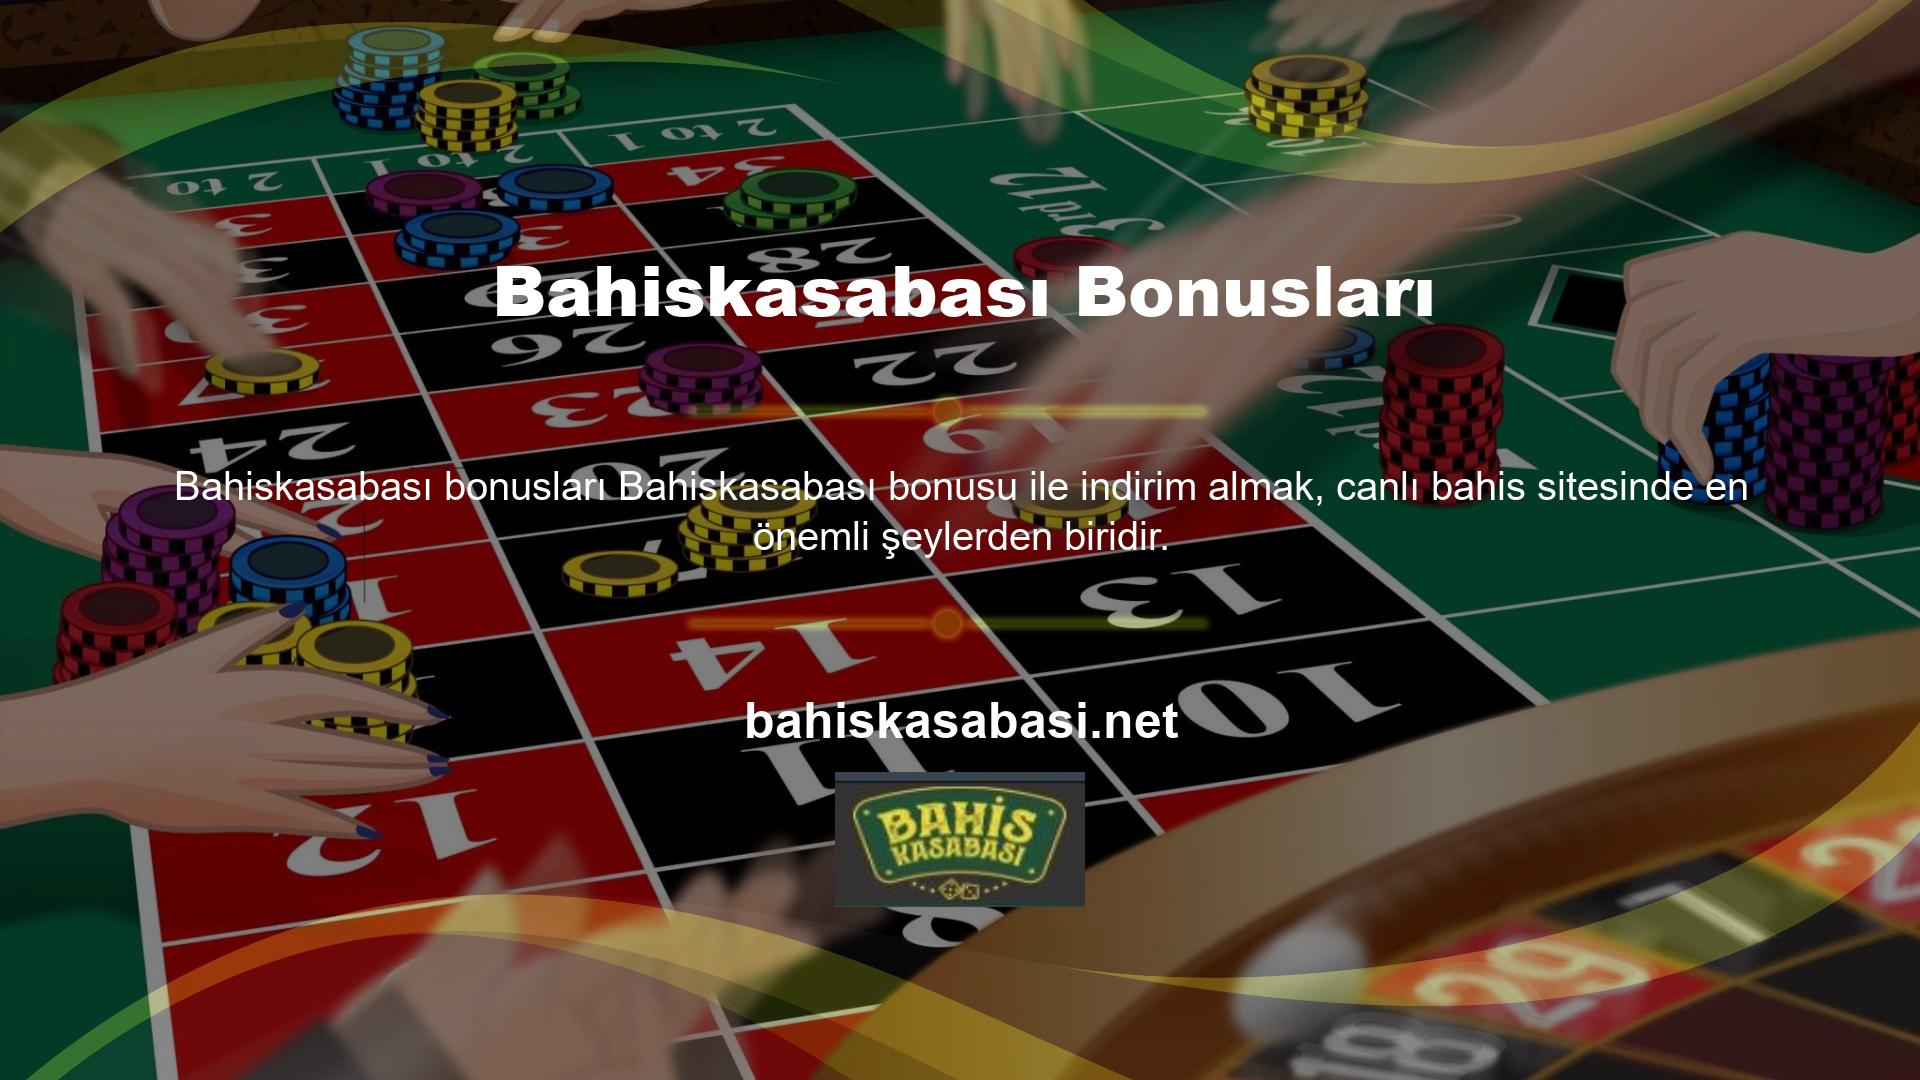 Casinoya üye olan tüm oyuncular bu bonustan yararlanmak ister